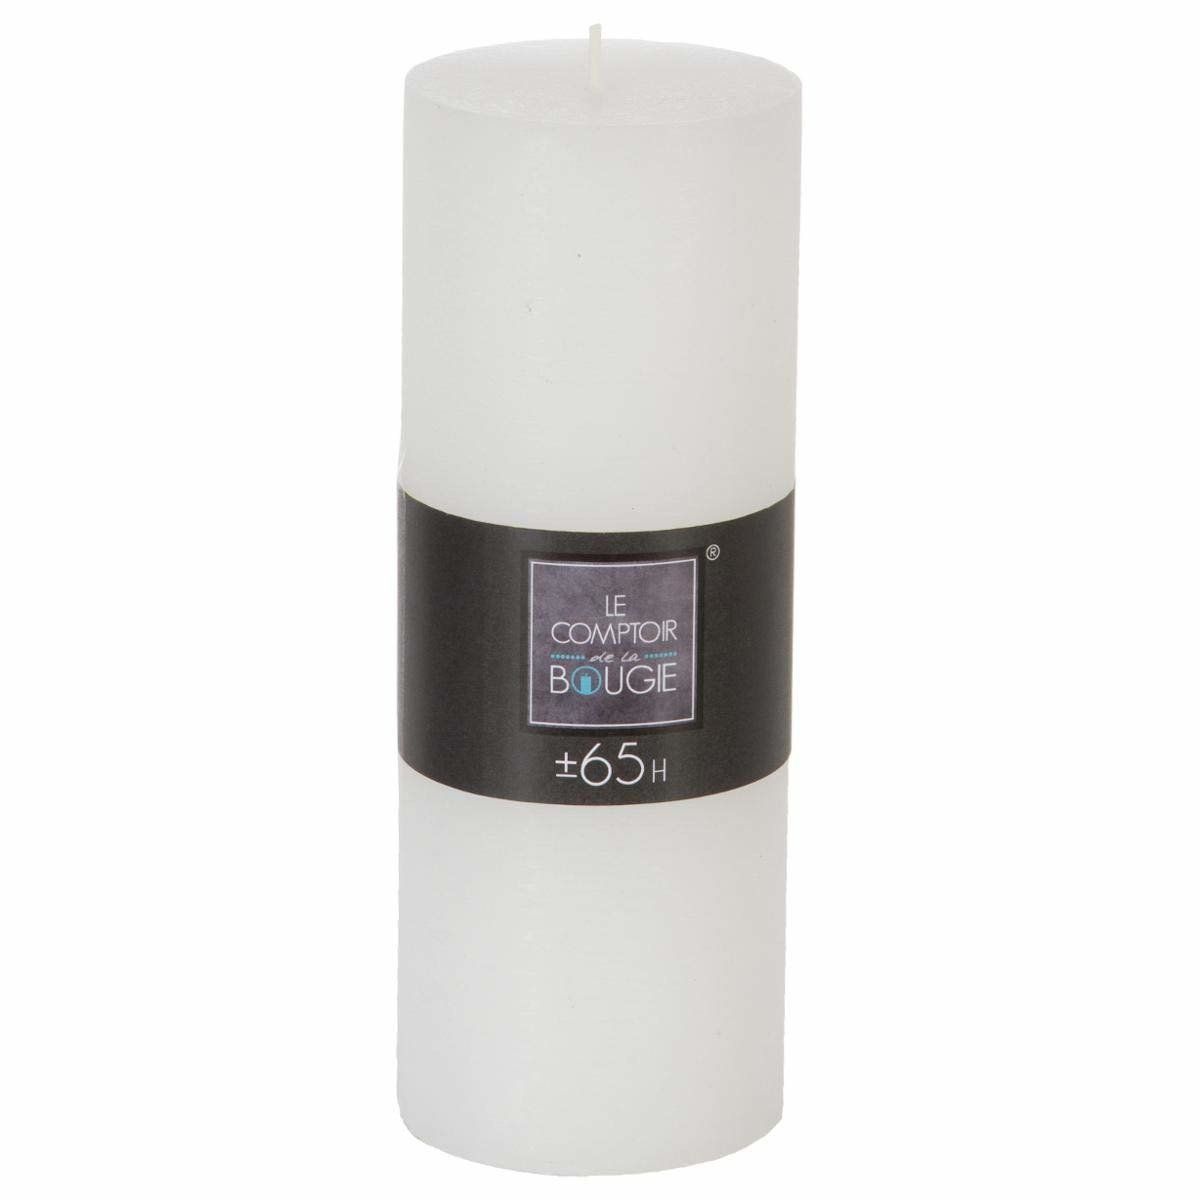 5five Simply Smart Dekorativní svíčka, bílá svíčka, 6,7x 18,9 cm - EMAKO.CZ s.r.o.